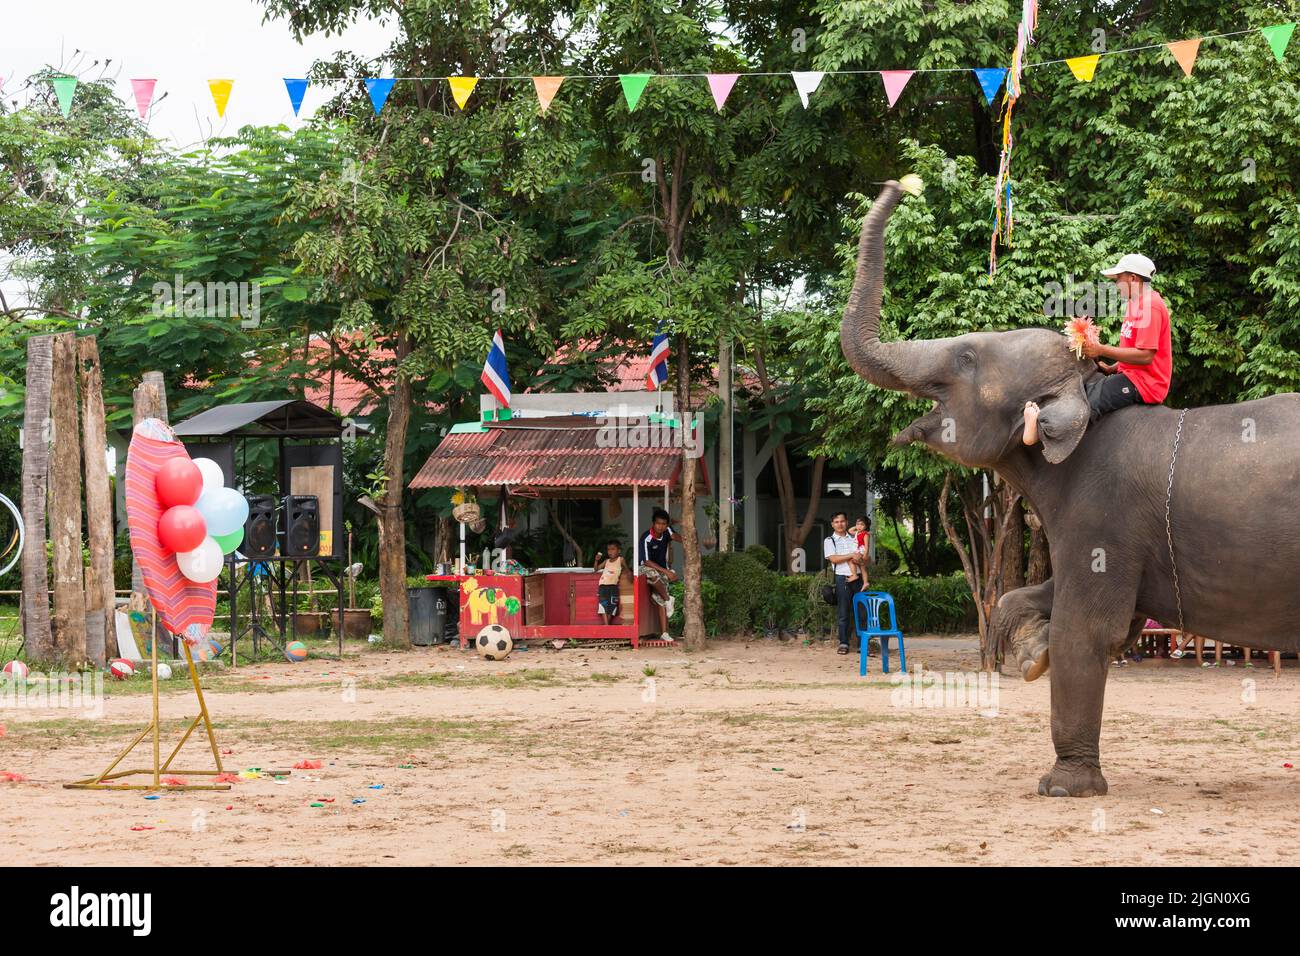 Elephant village, juego de dardos, globos rompiendo, espectáculo de elefantes, actuación, Surin,Isan(Isaan),Tailandia, Sudeste Asiático, Asia Foto de stock